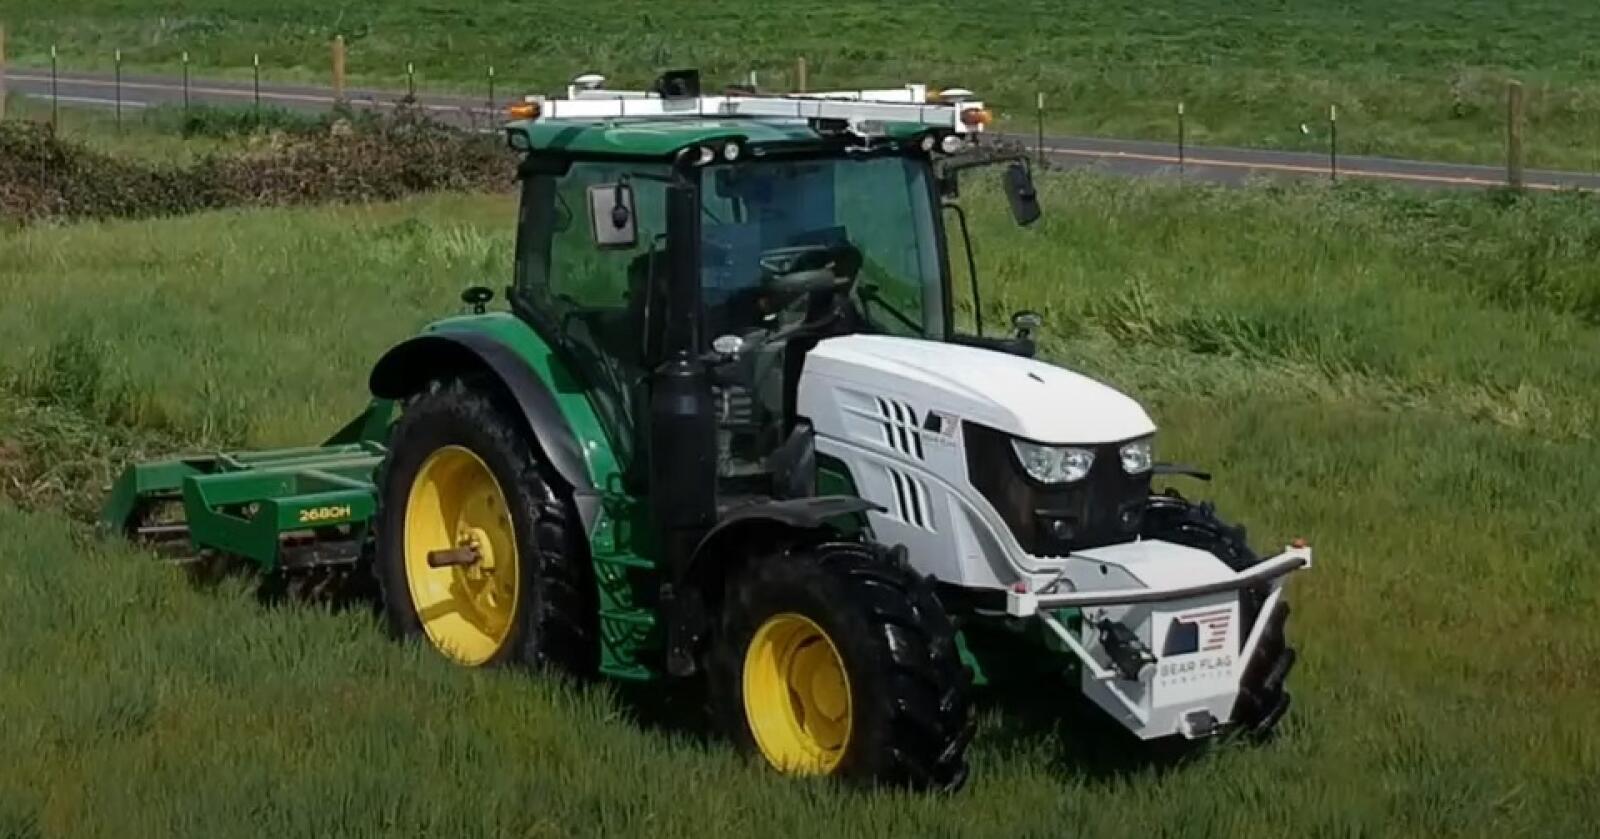 AUTONOM: John Deere har kjøpt Bear Flag Robotics for å gjøre traktorene sine selvkjørende. Foto: Skjermdump fra YouTube